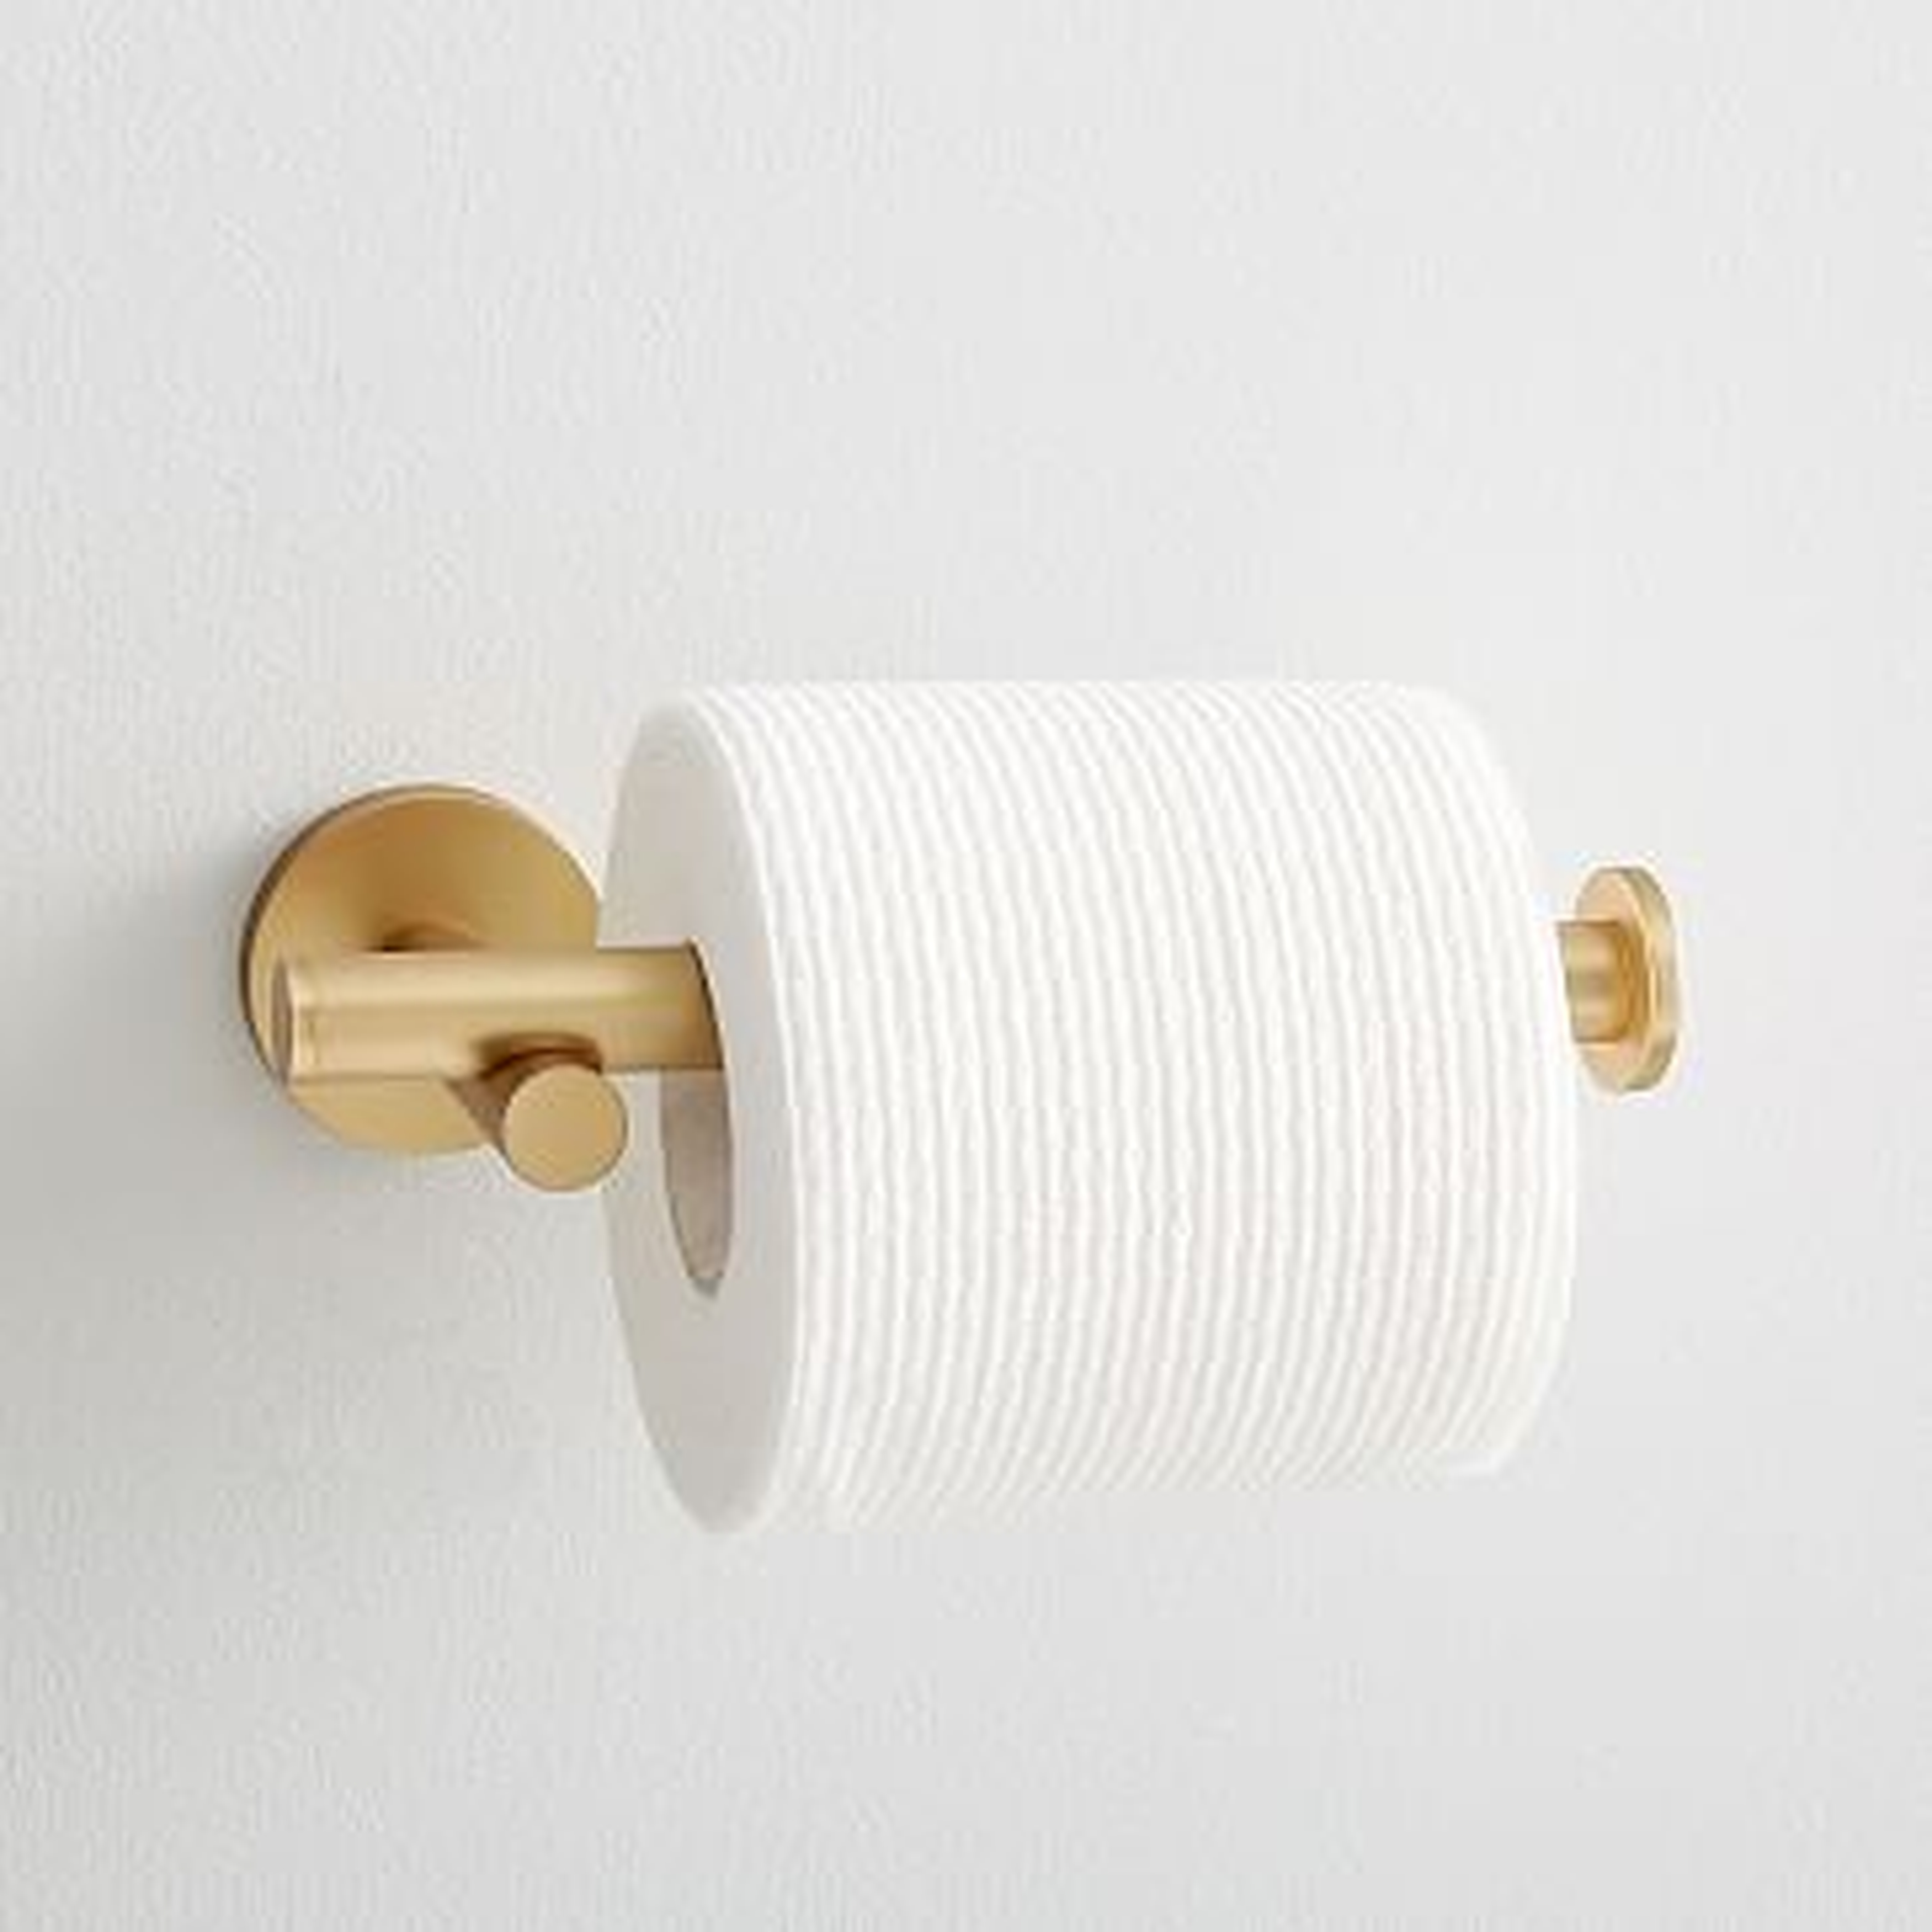 Modern Overhang Toilet Paper Holder, Antique Brass - West Elm